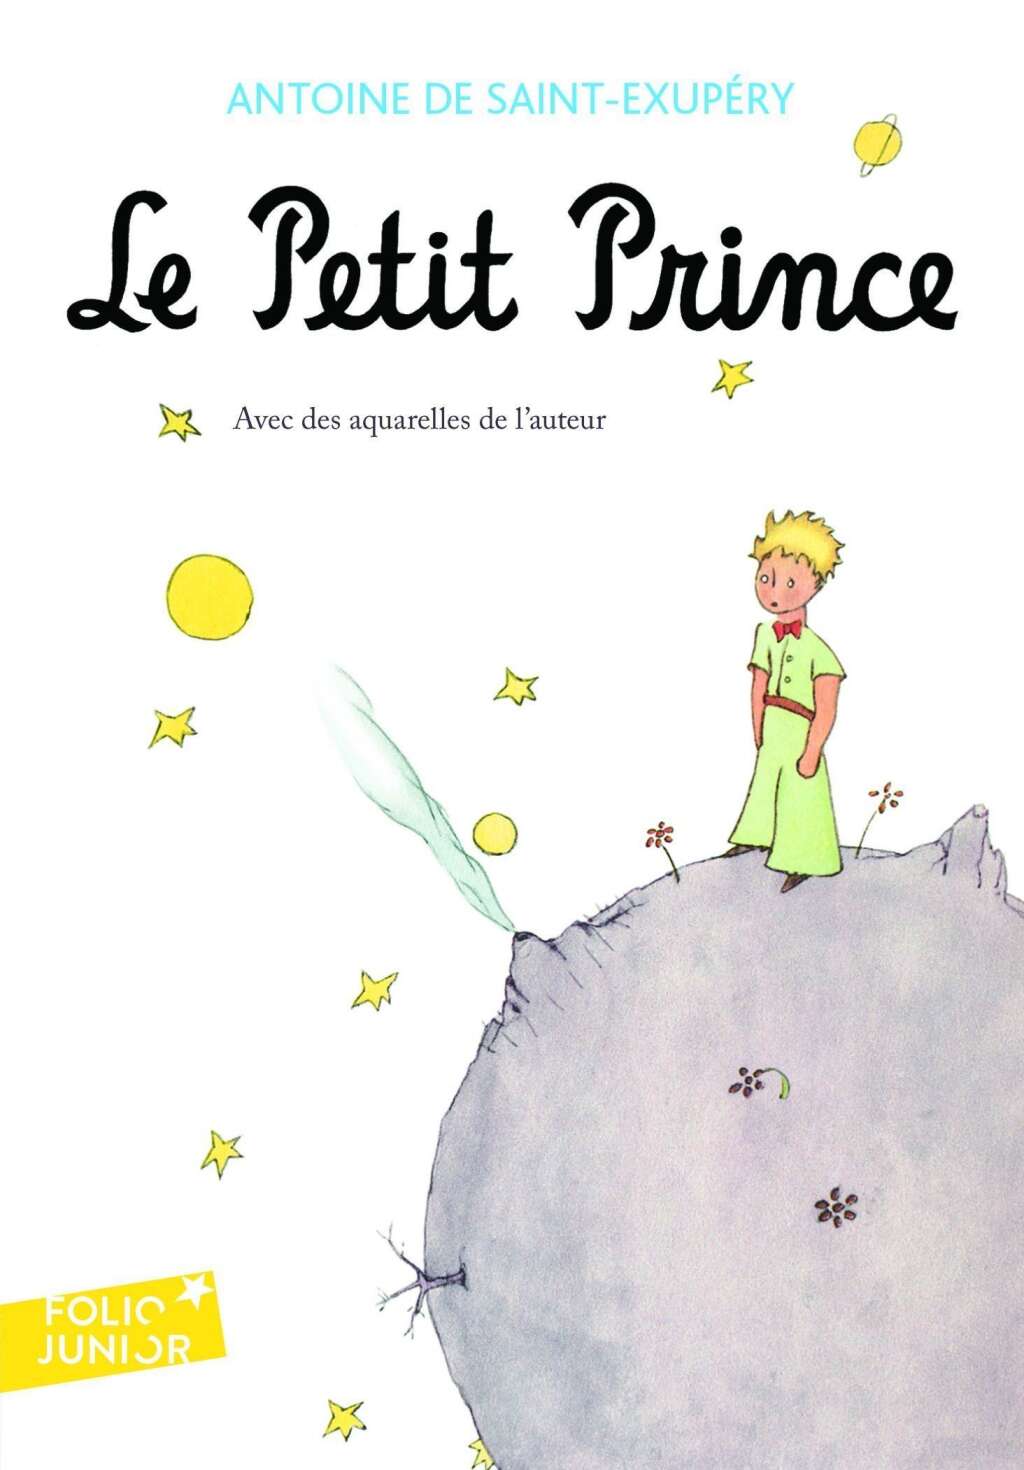 Réponse: "Le Petit Prince" (1943) d'Antoine de Saint-Exupéry